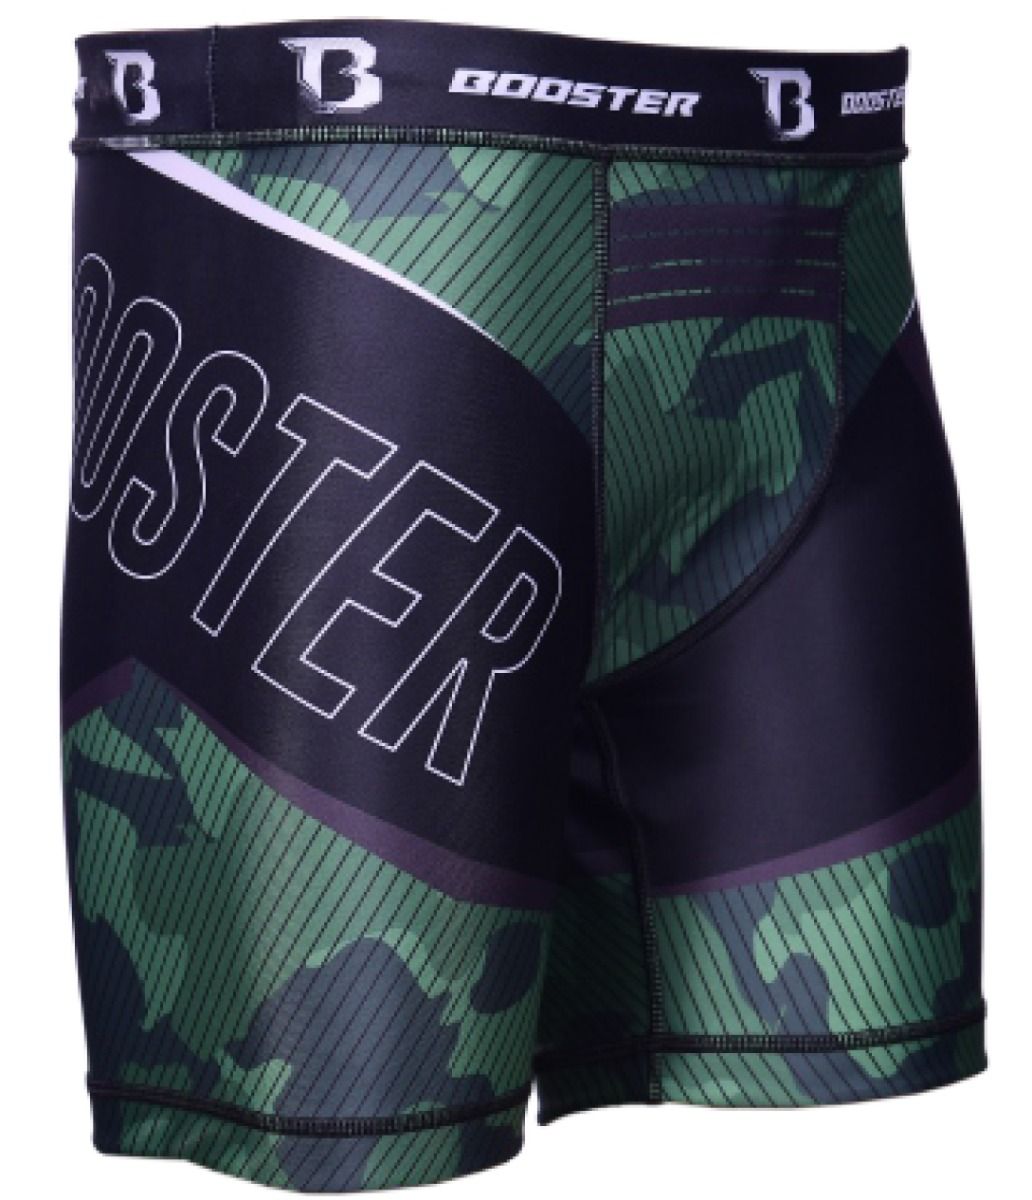 Booster Fight Gear B FORCE 3 MMA Trunk groen-zwart-legerprint